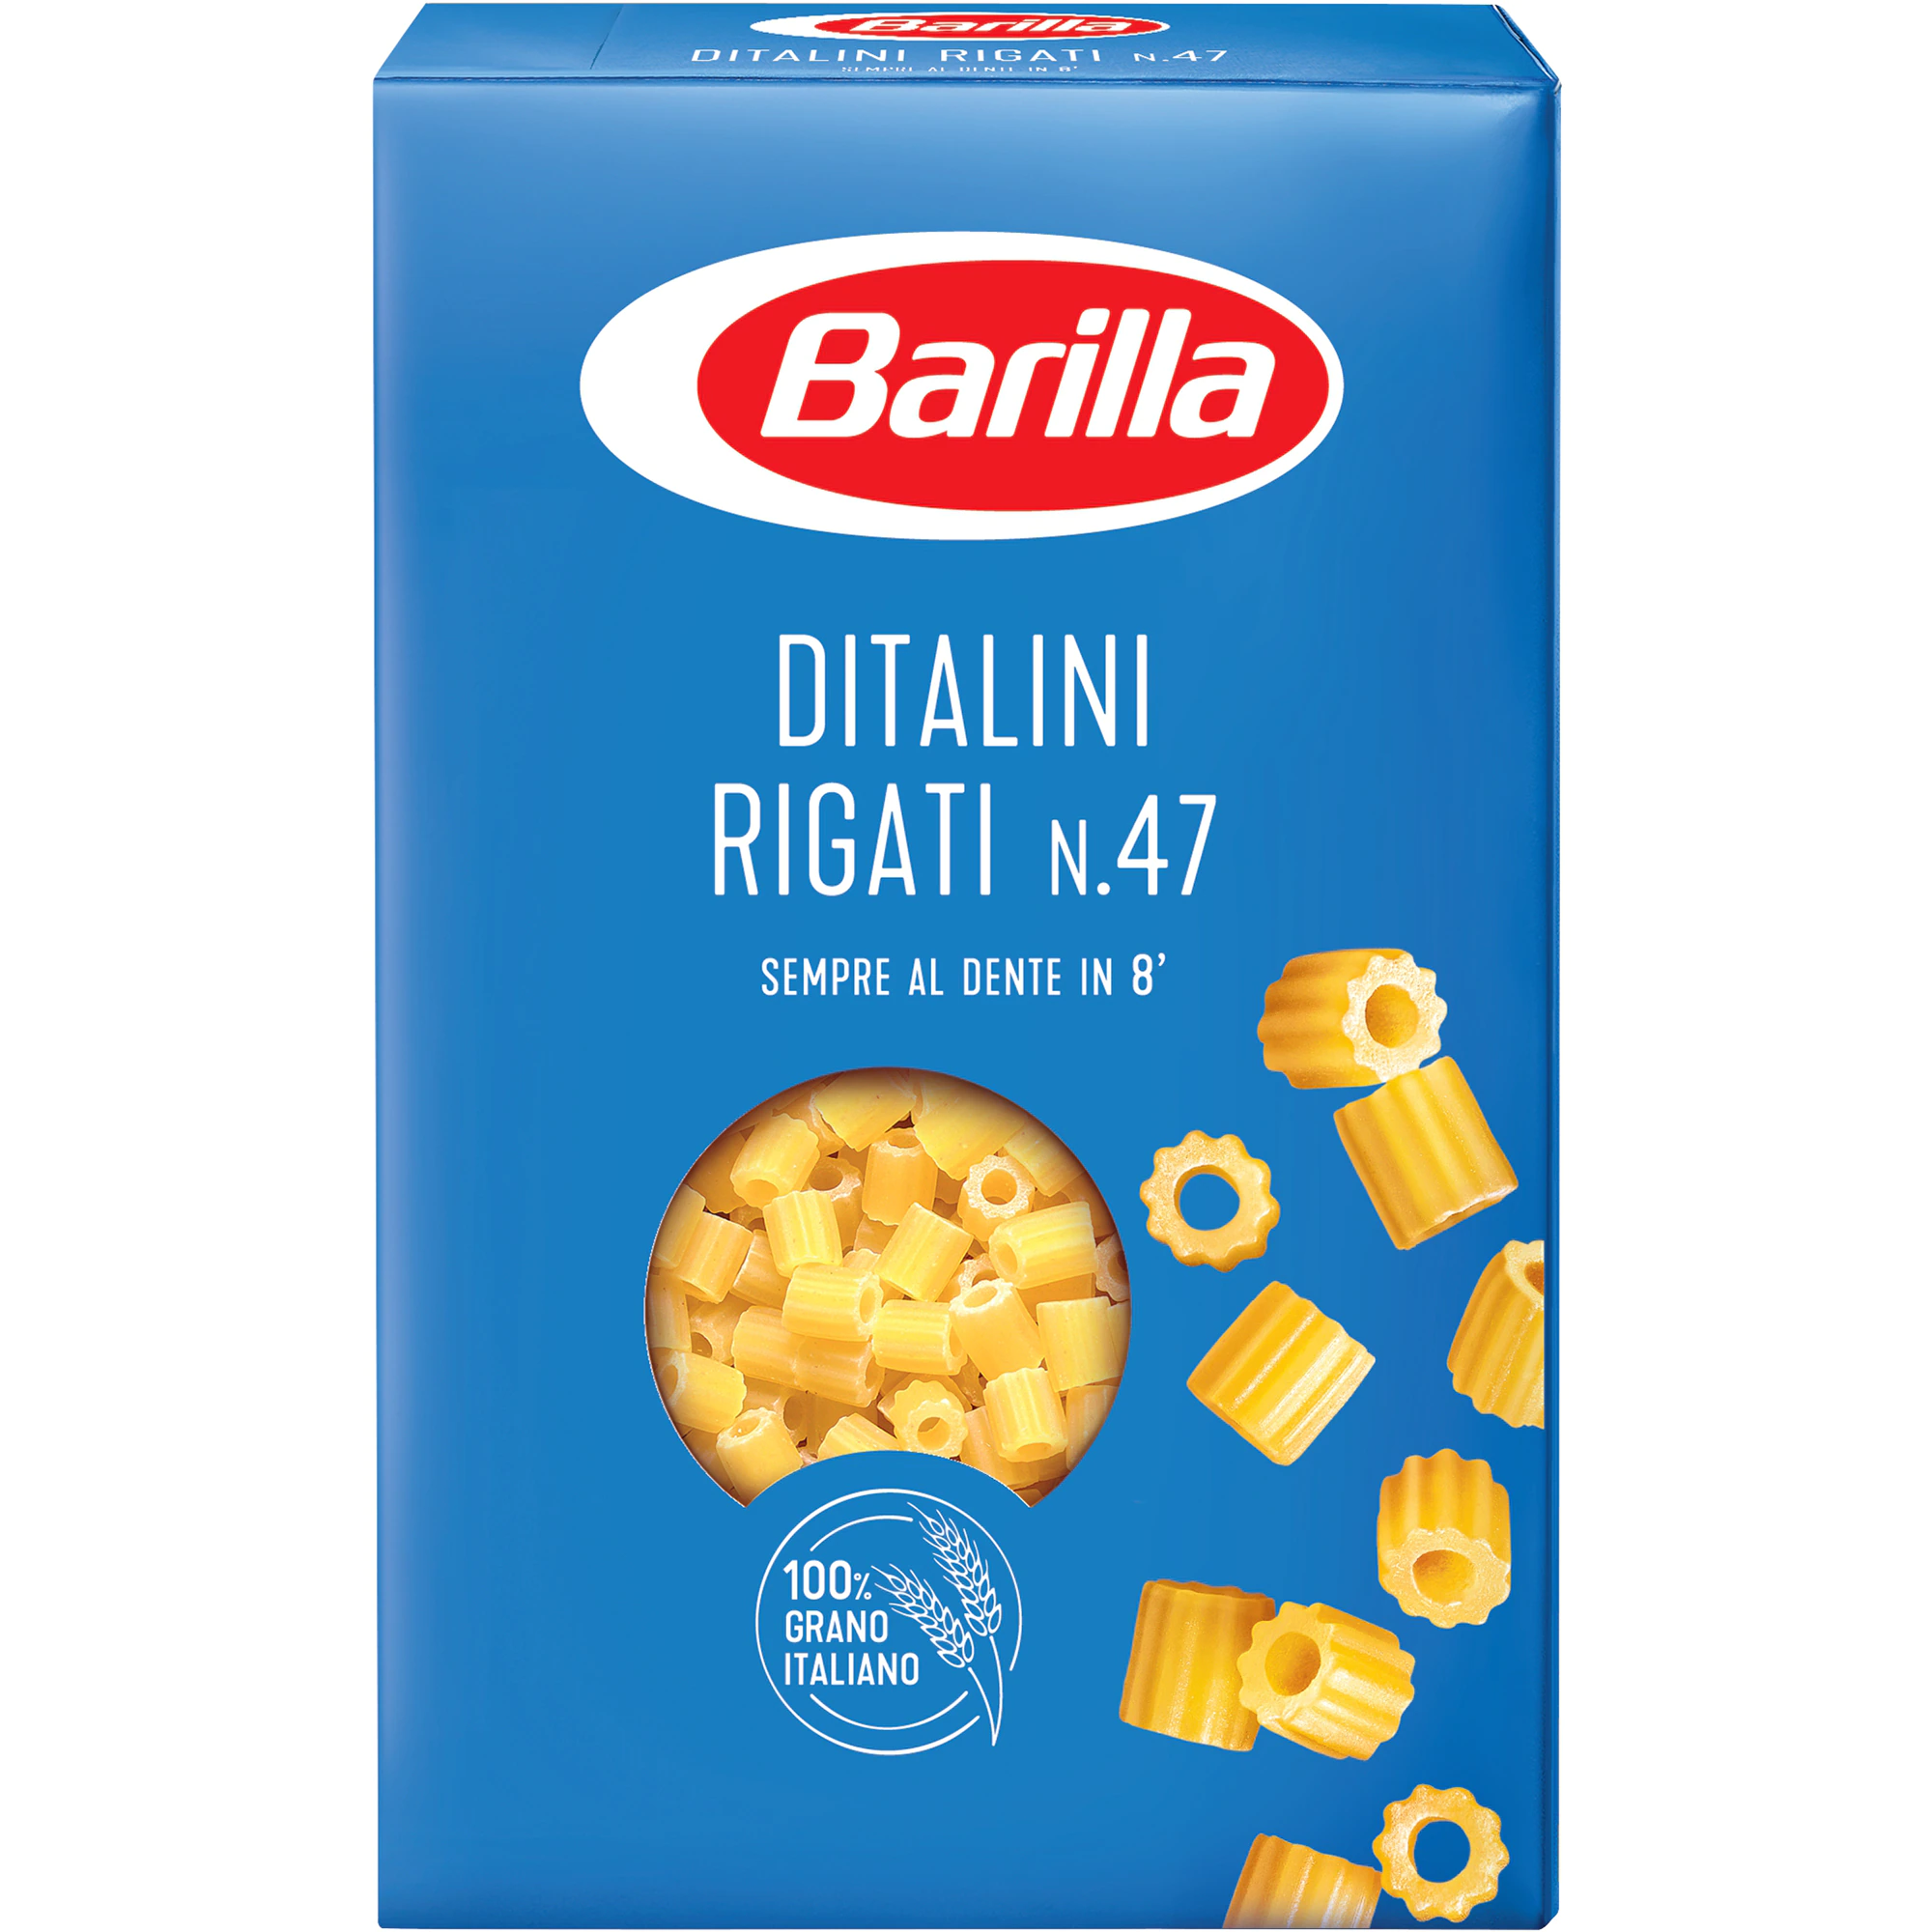 Pasta Barilla Ditalini Rigati n.47